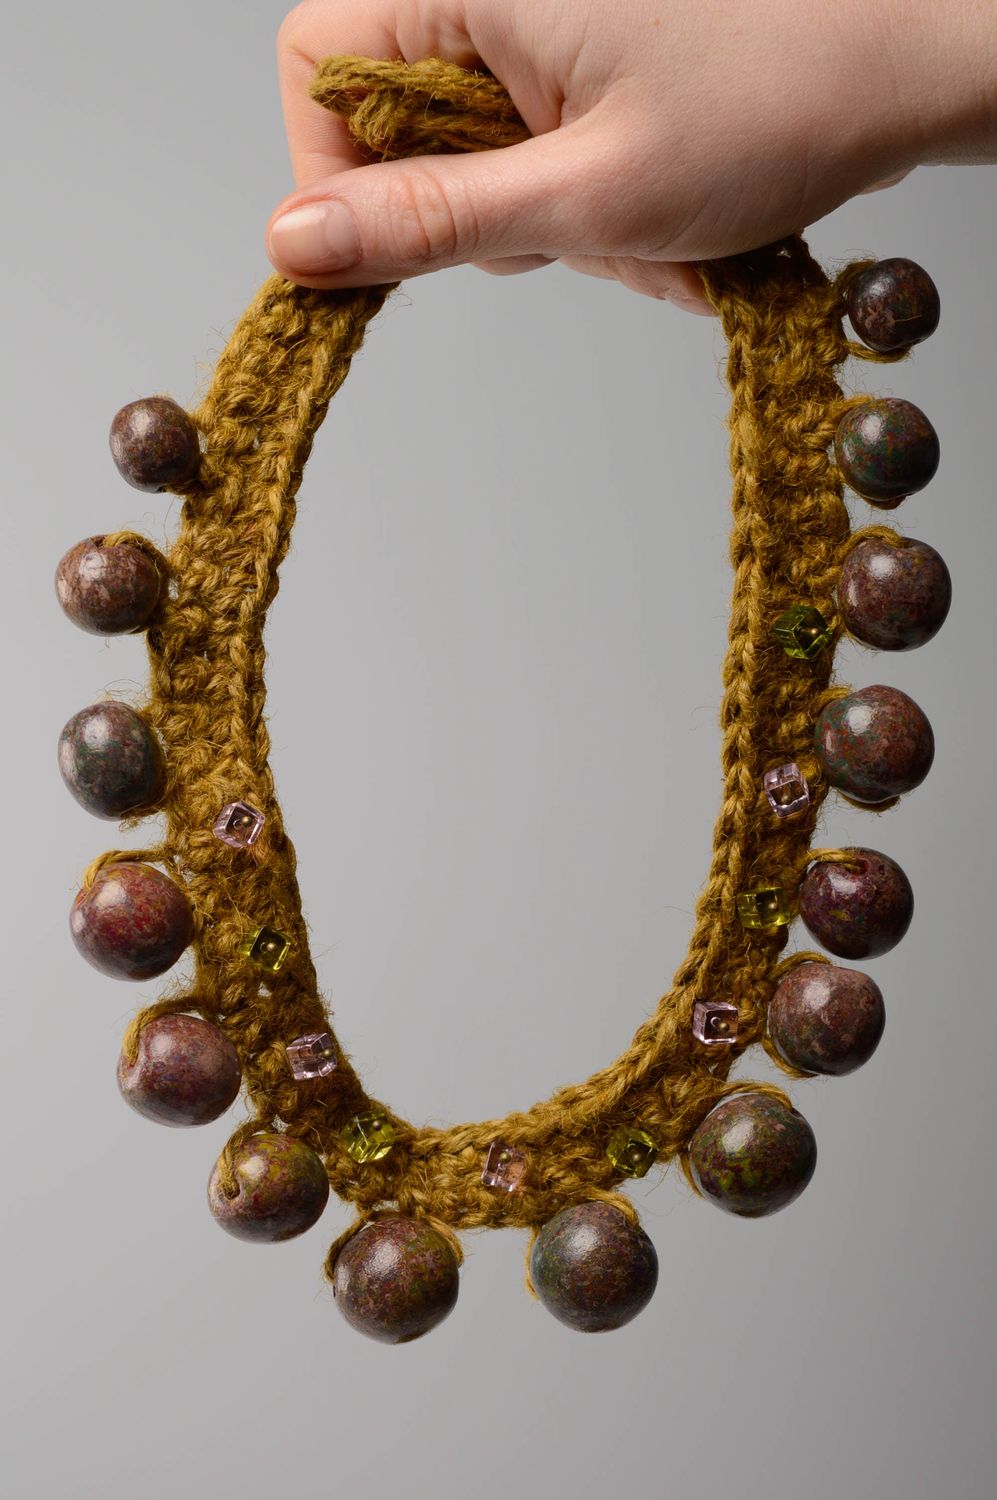 Textil Collier mit Perlen gehäkelt foto 5